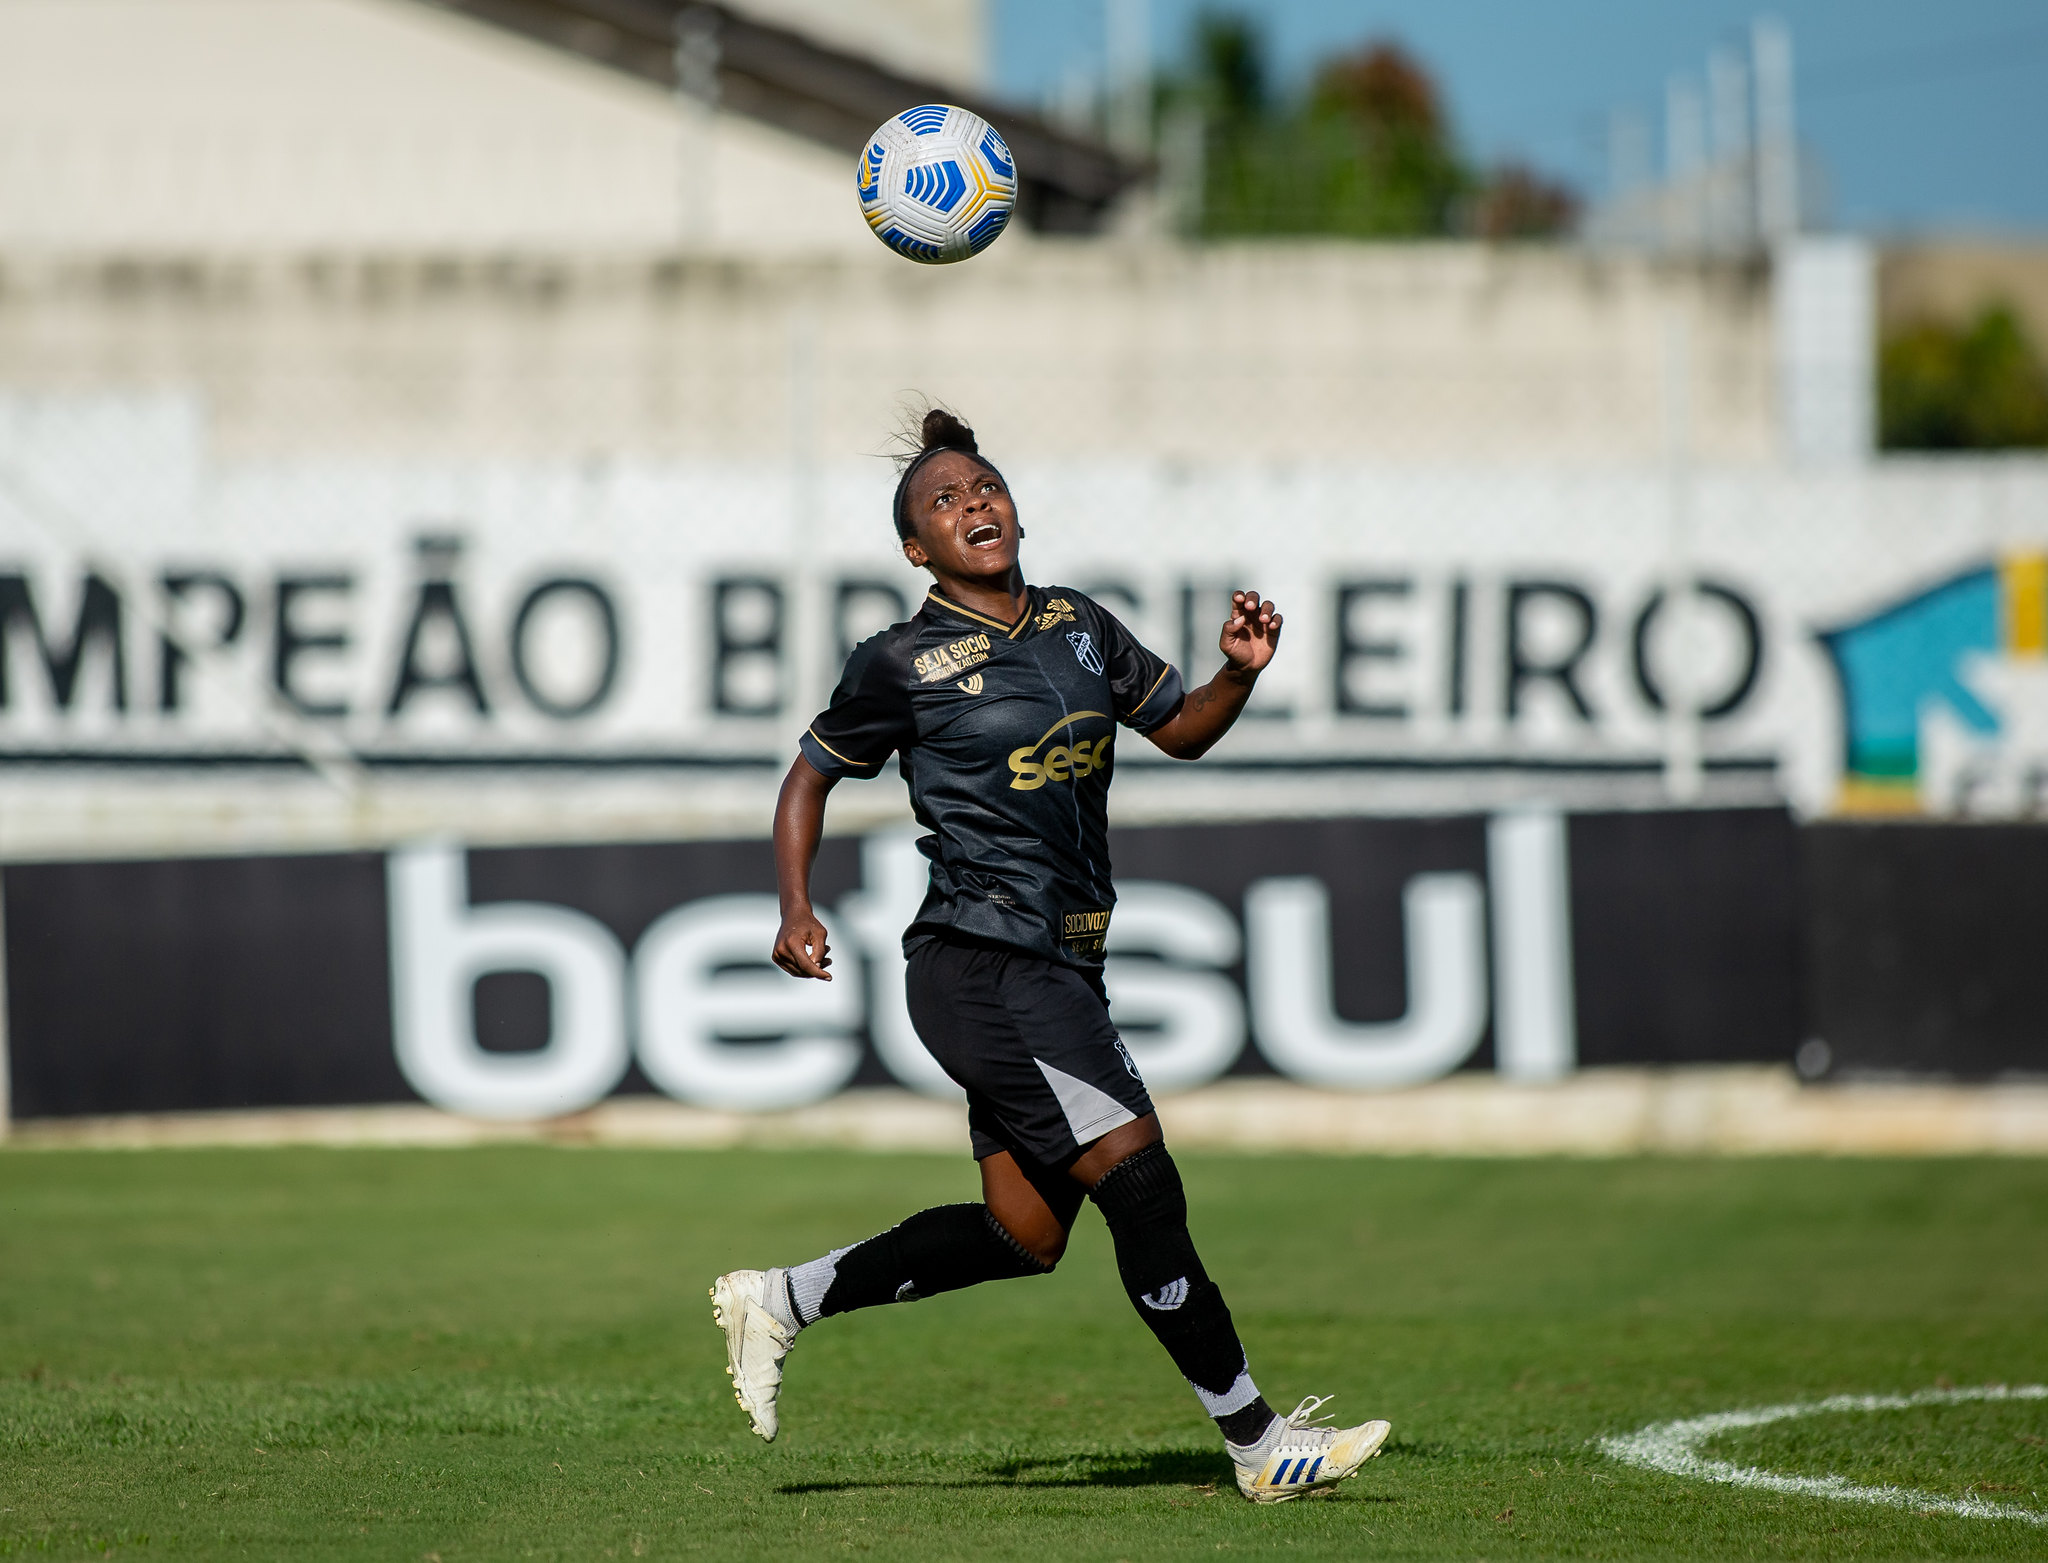 Fut.Feminino: Michele Carioca chega à marca de 16 gols com a camisa do Ceará